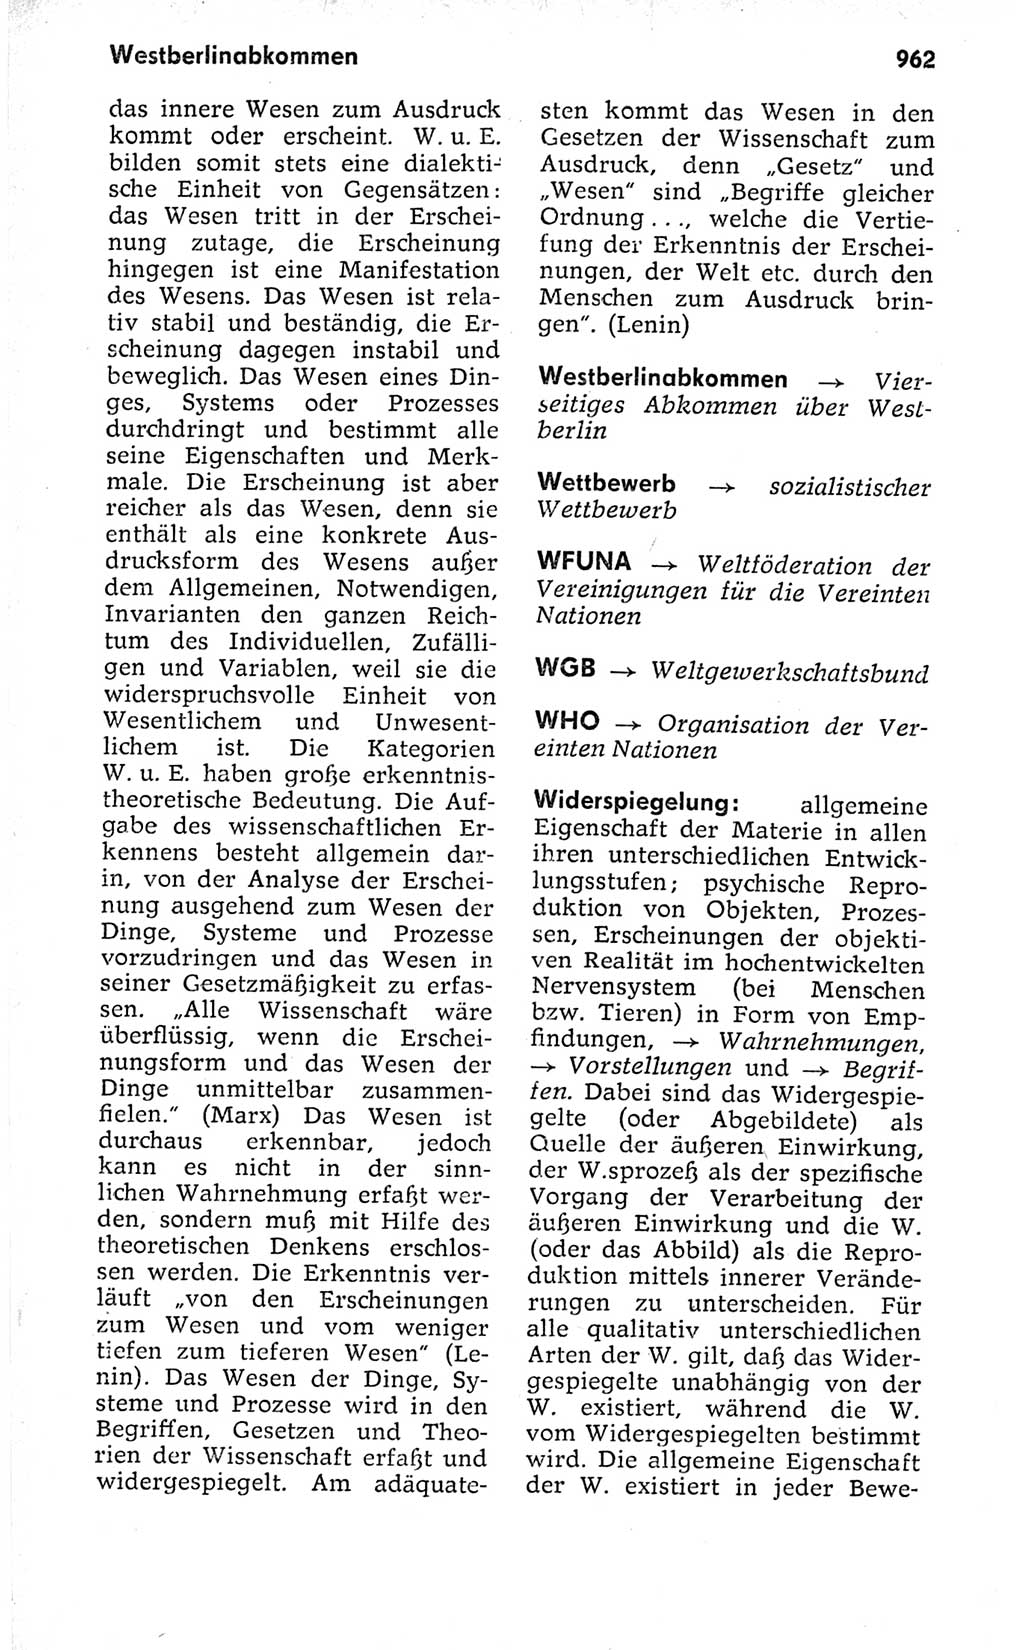 Kleines politisches Wörterbuch [Deutsche Demokratische Republik (DDR)] 1973, Seite 962 (Kl. pol. Wb. DDR 1973, S. 962)